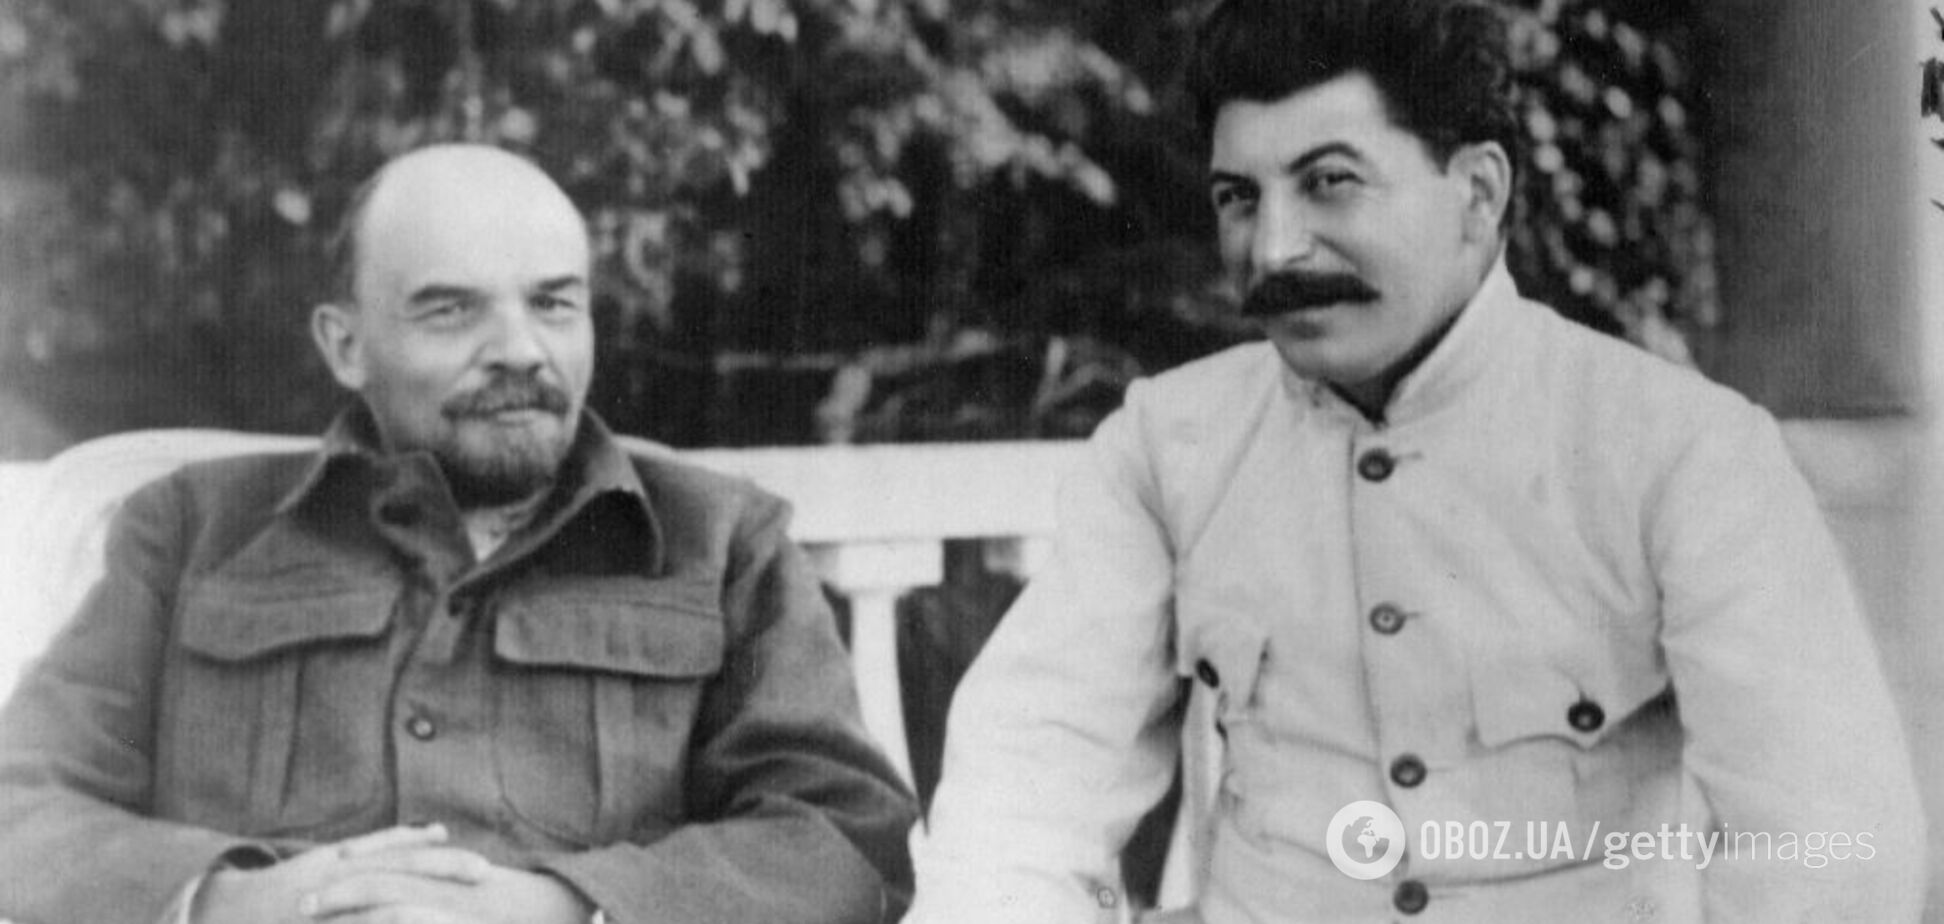 Имения, 'отжатые' у буржуев и осетрина на обед: как 'бедовал' Ленин и его окружение, пока народ пух от голода